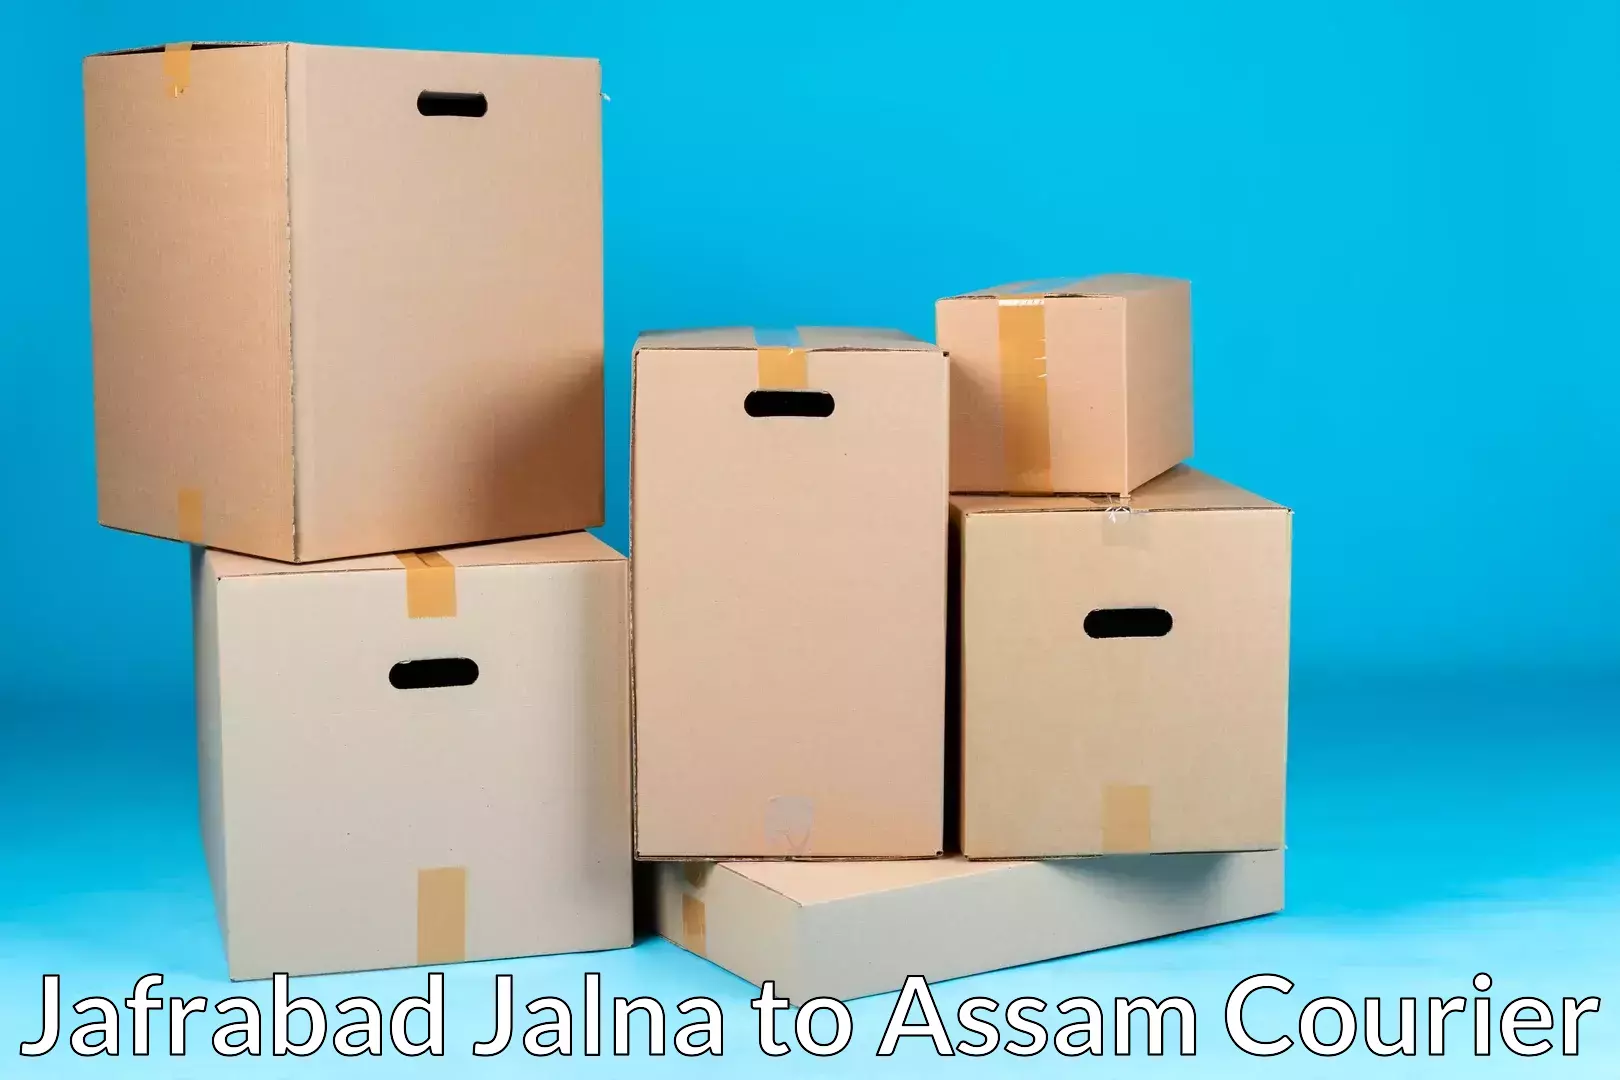 Furniture moving plans Jafrabad Jalna to Kabuganj